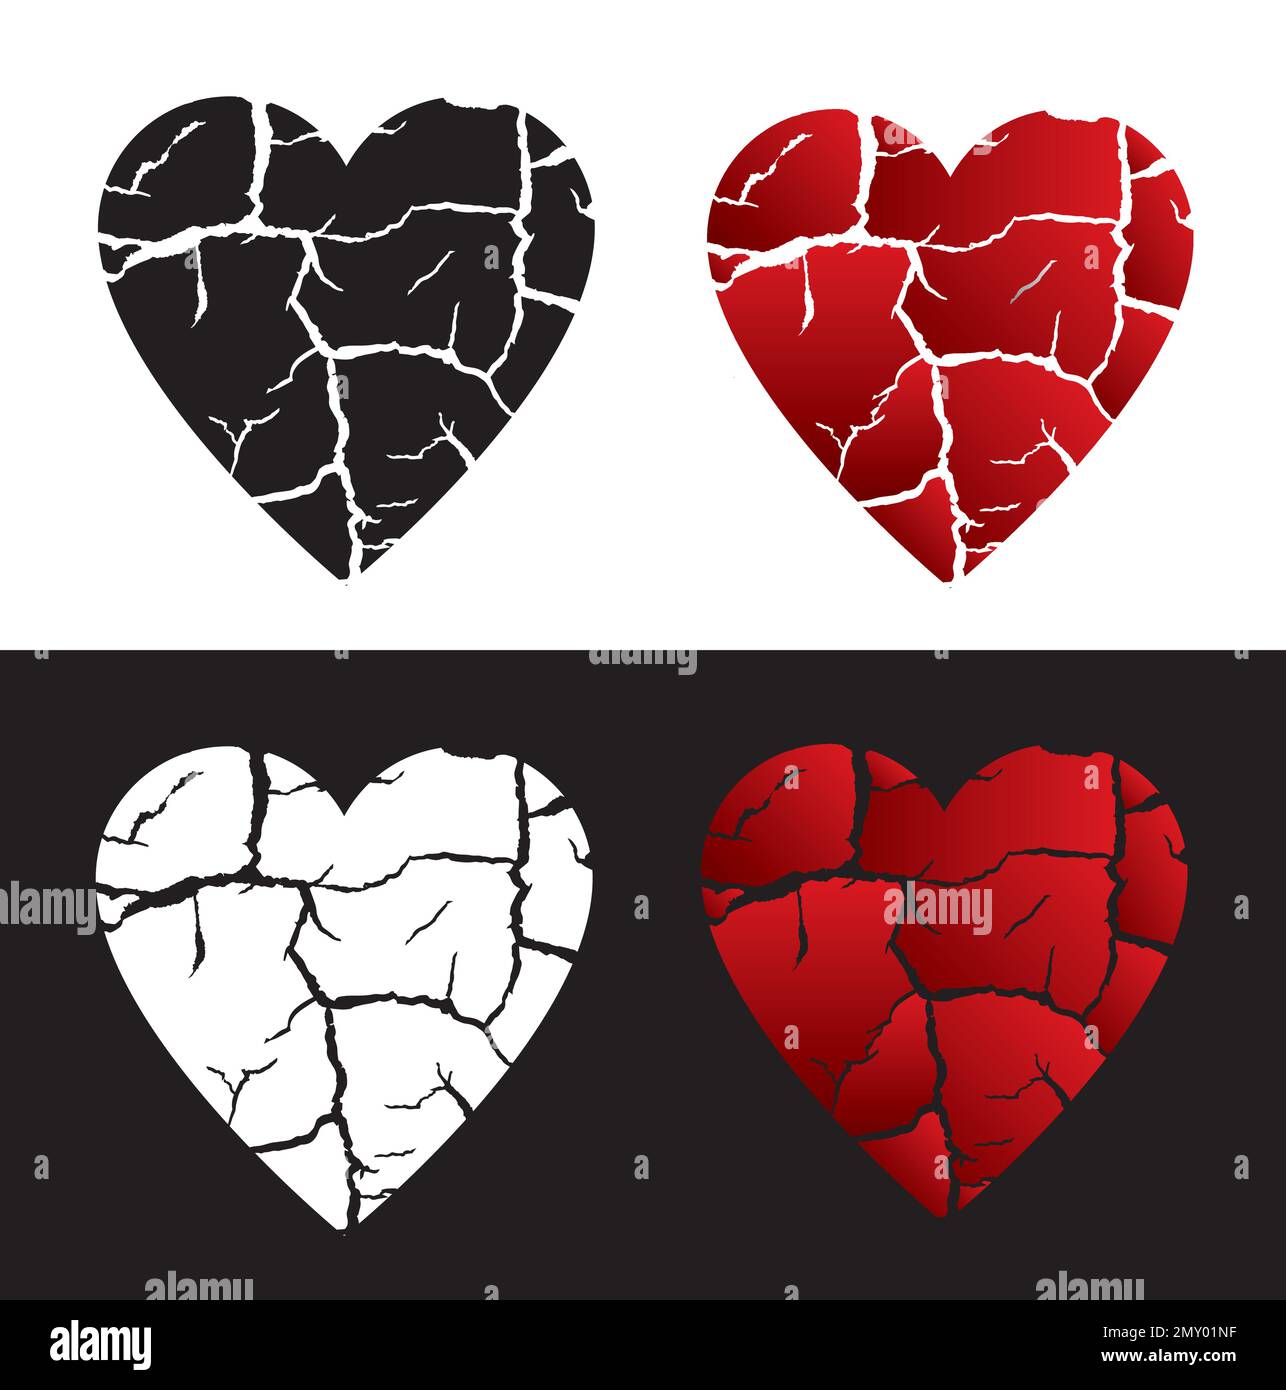 Ein Symbol für gebrochenes Herz, unglückliche Liebe. Vier herzförmige Symbole symbolisieren das Ende der Liebe. Vektor verfügbar. Stock Vektor